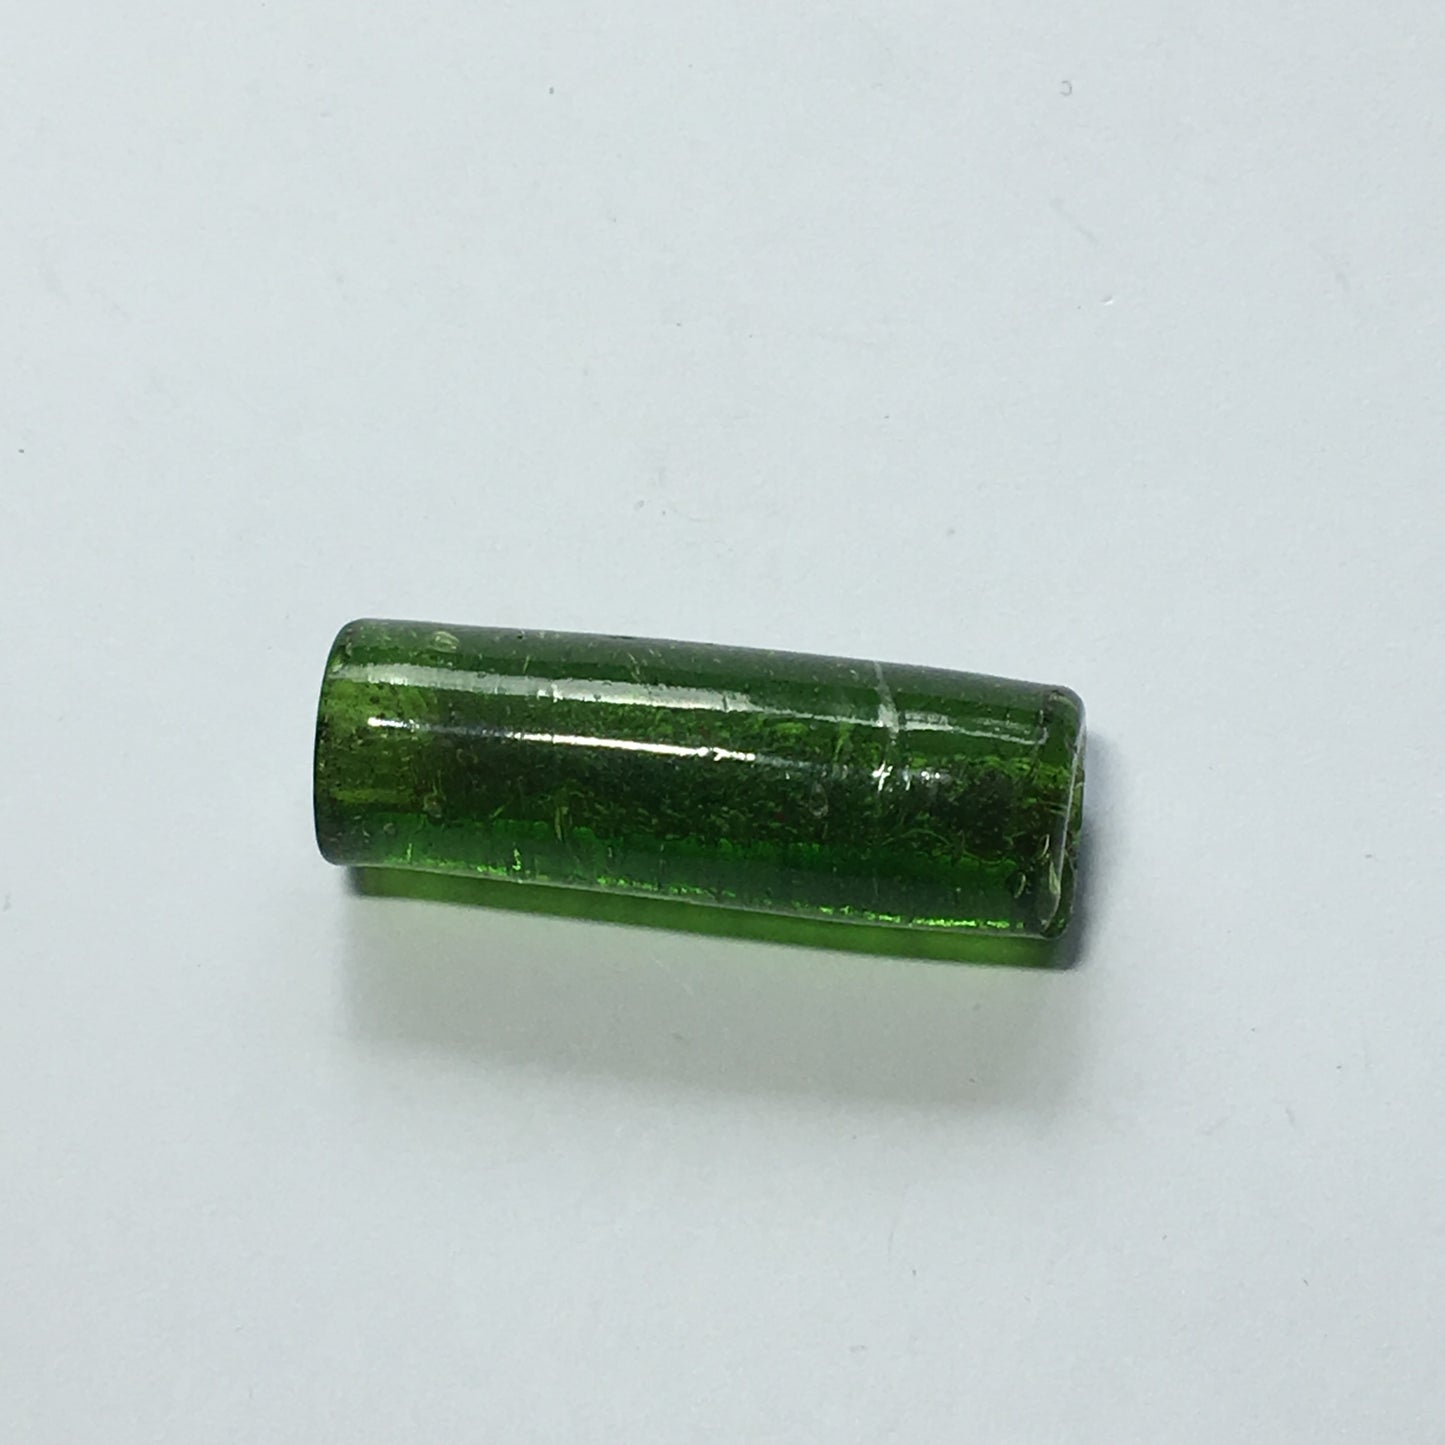 Transparent Dark Green Tubular LampWork Glass Bead Pendant/Focal Bead, 30 x 10 mm